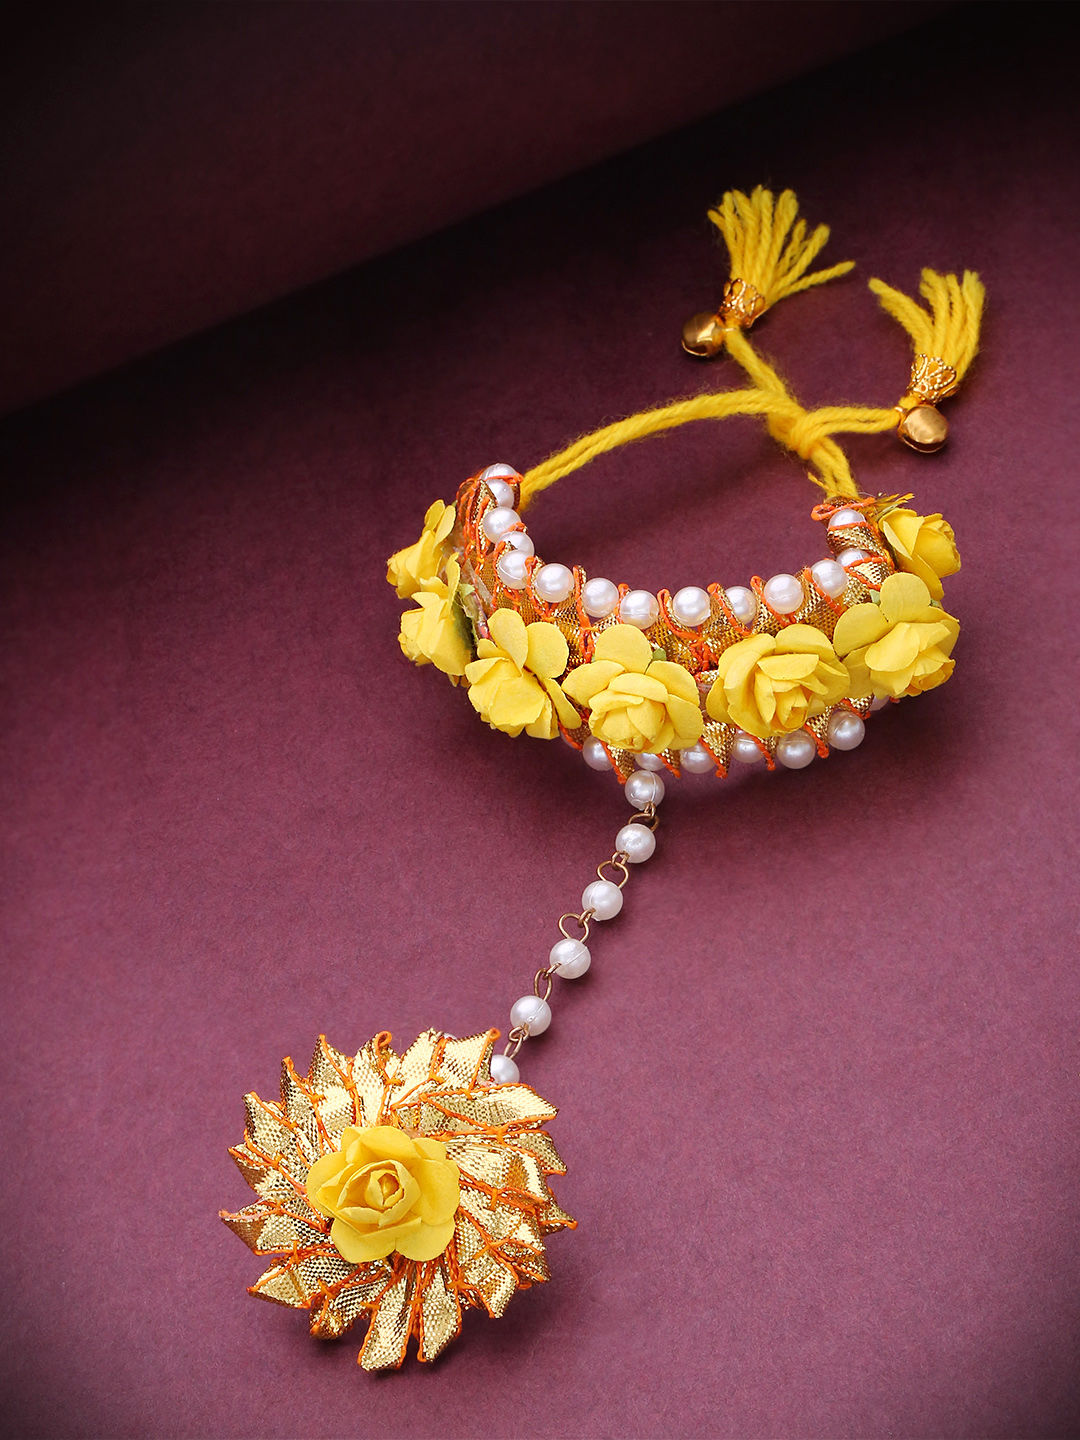 Share more than 84 flower ring bracelet best